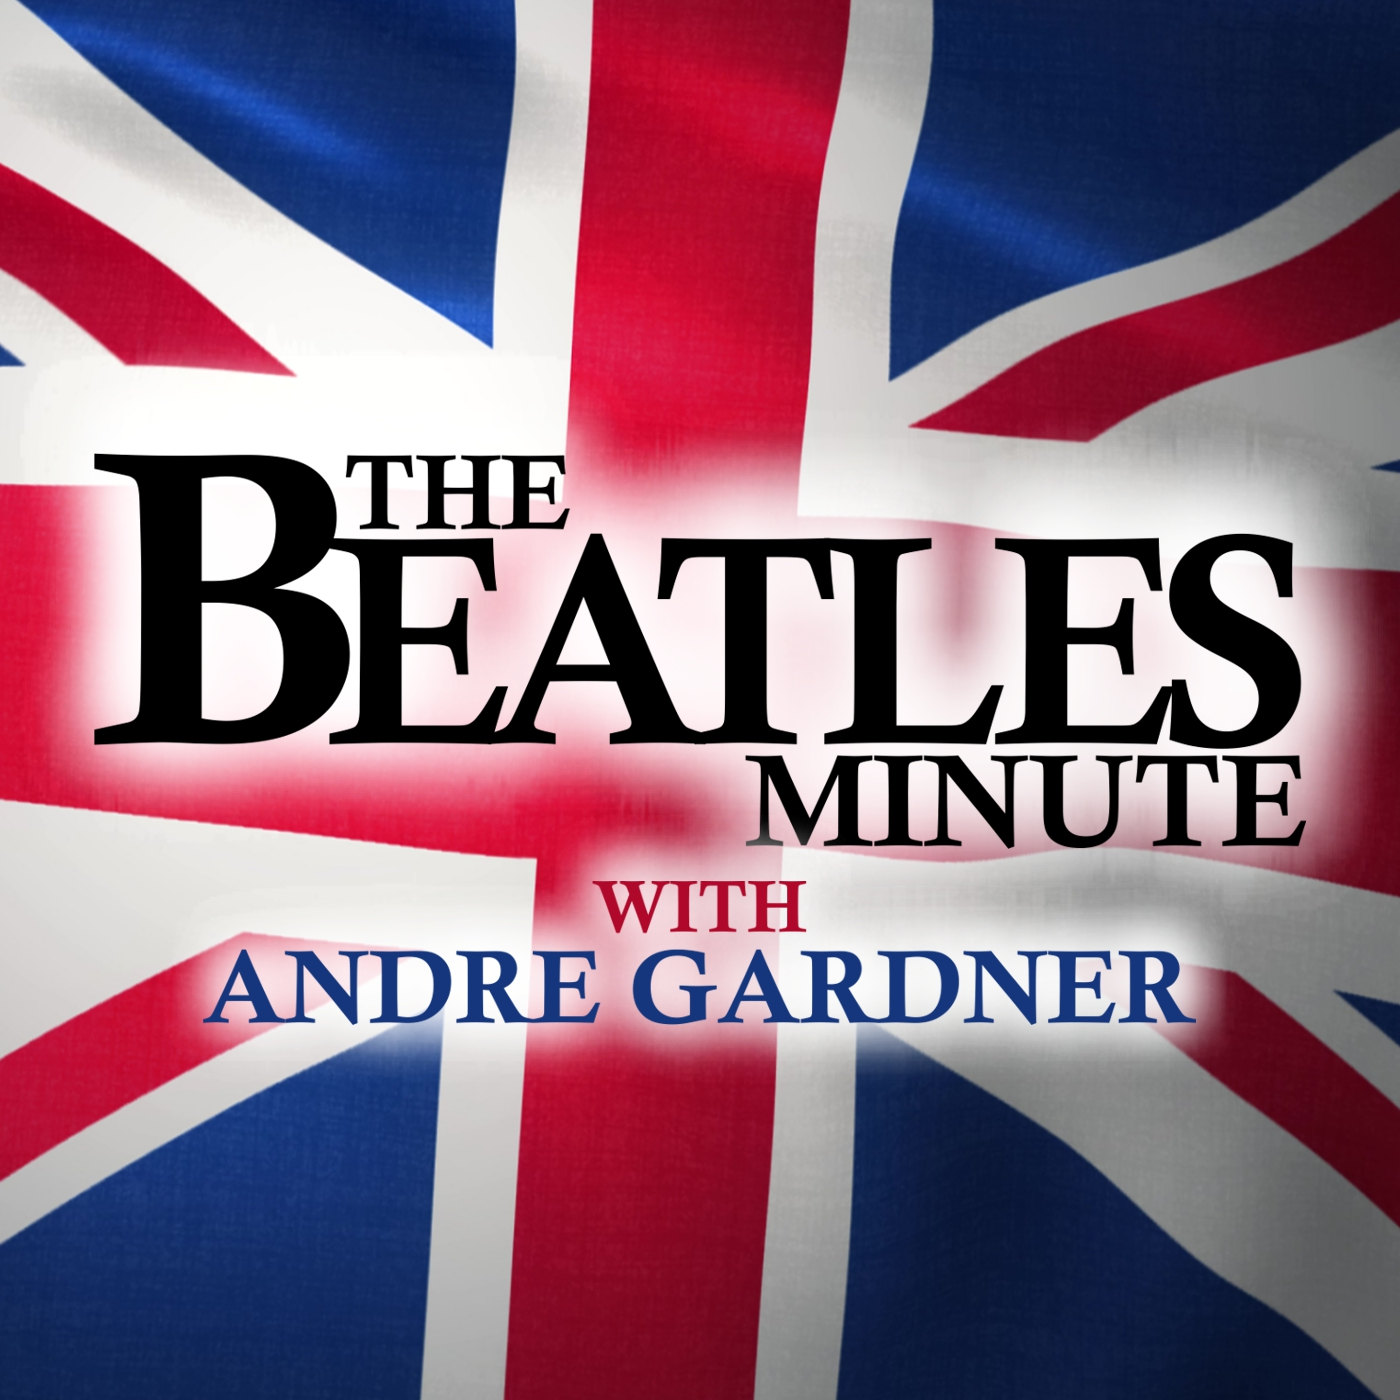 Beatles Minute - week of September 23, 2019